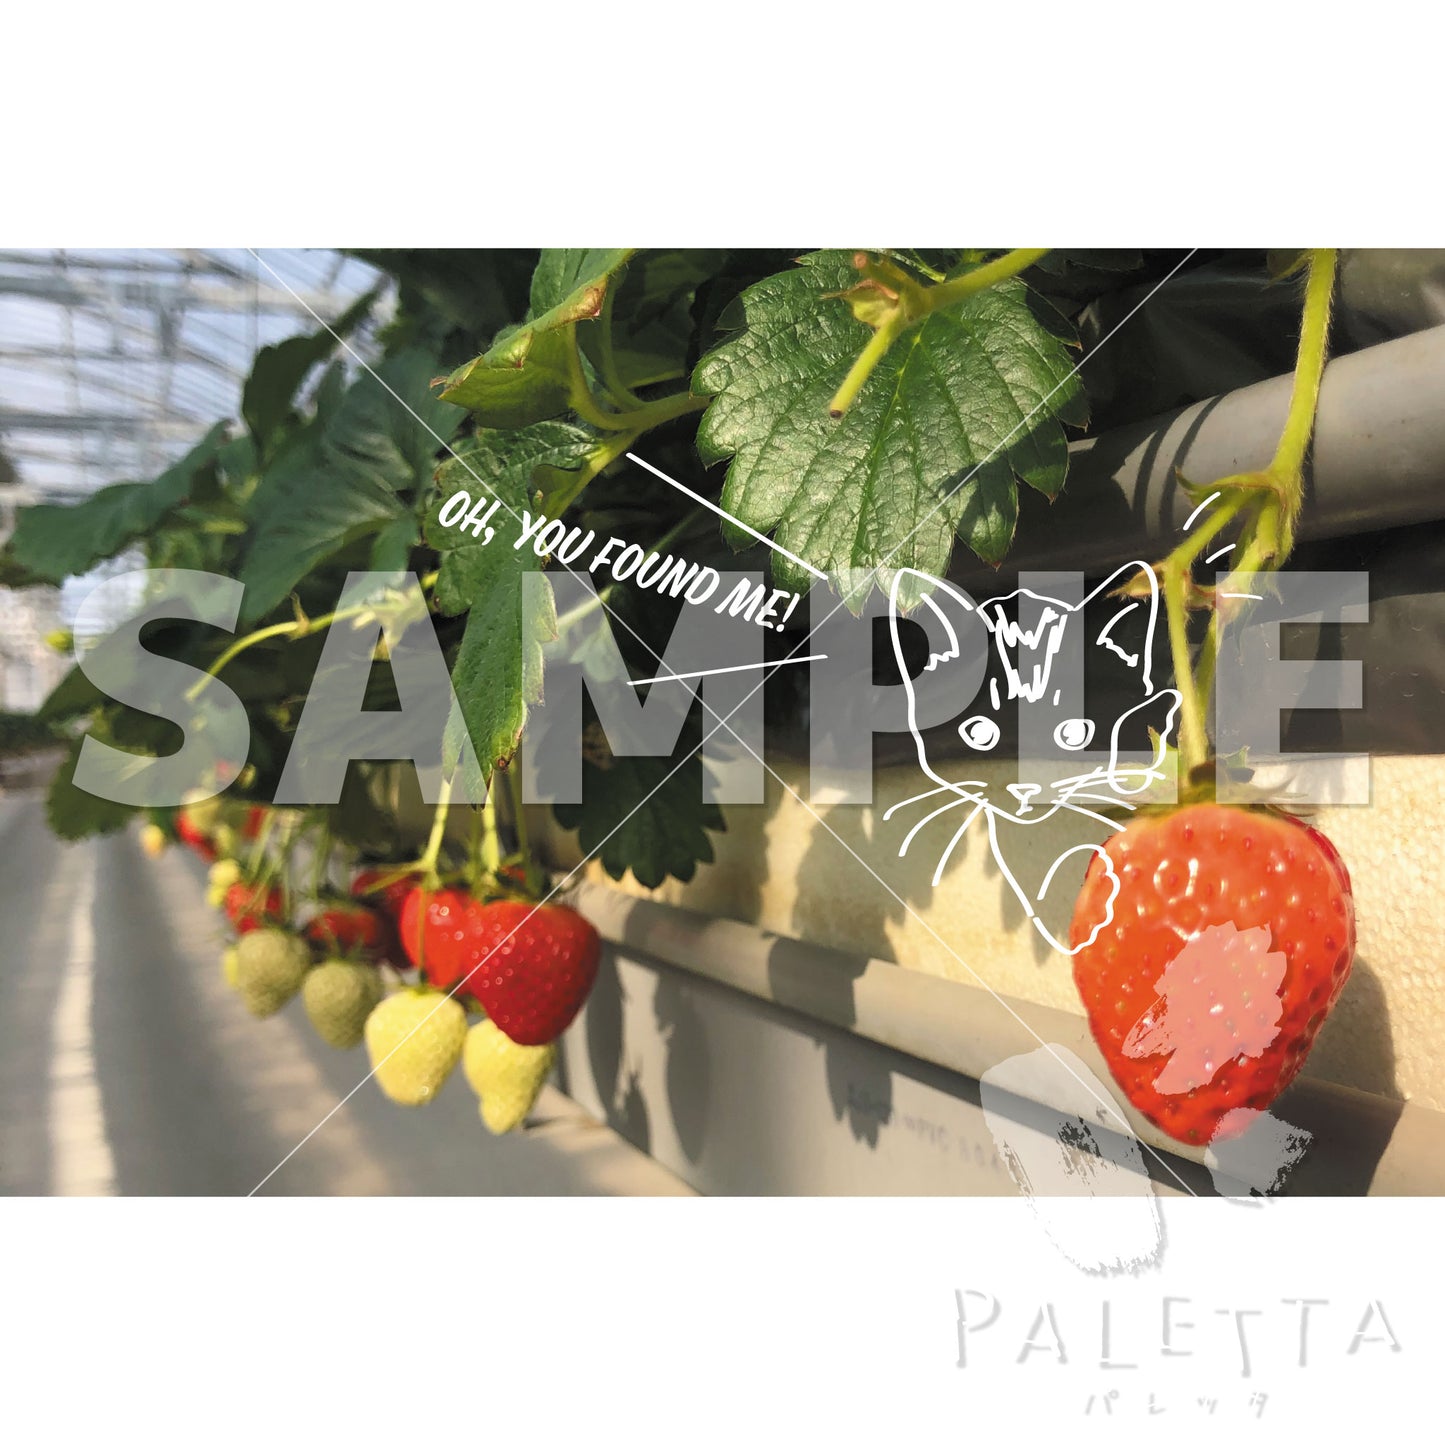 【Paletta】p02-04 イチゴ